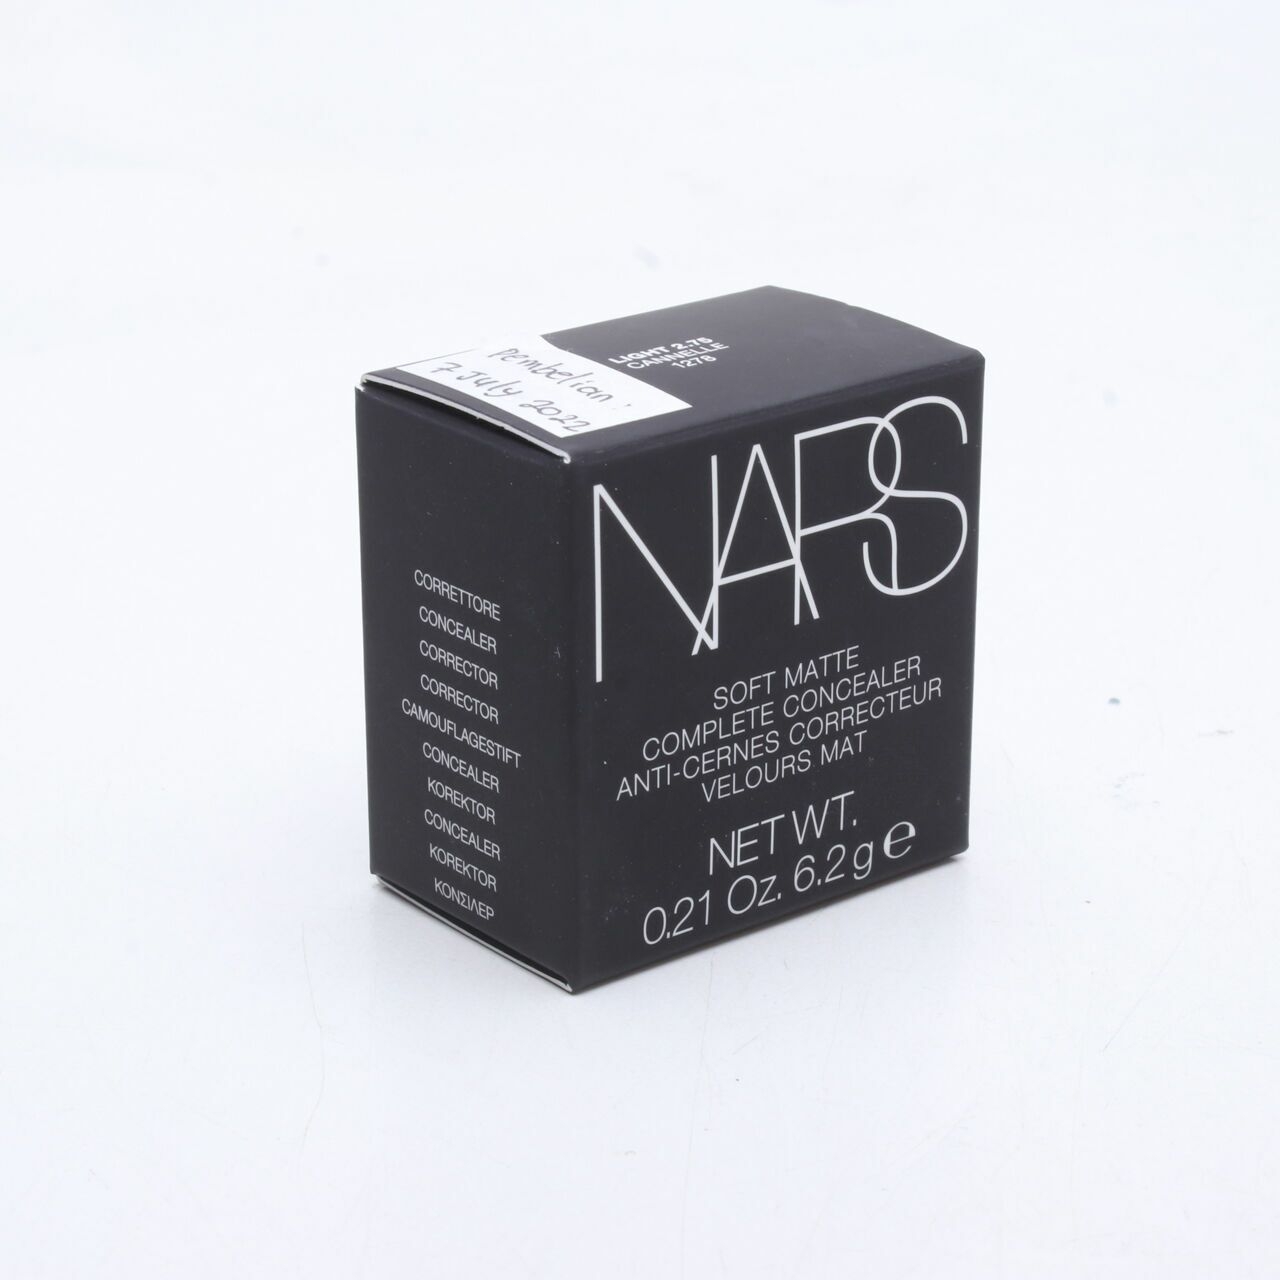 Nars Soft Matte Complete Concealer